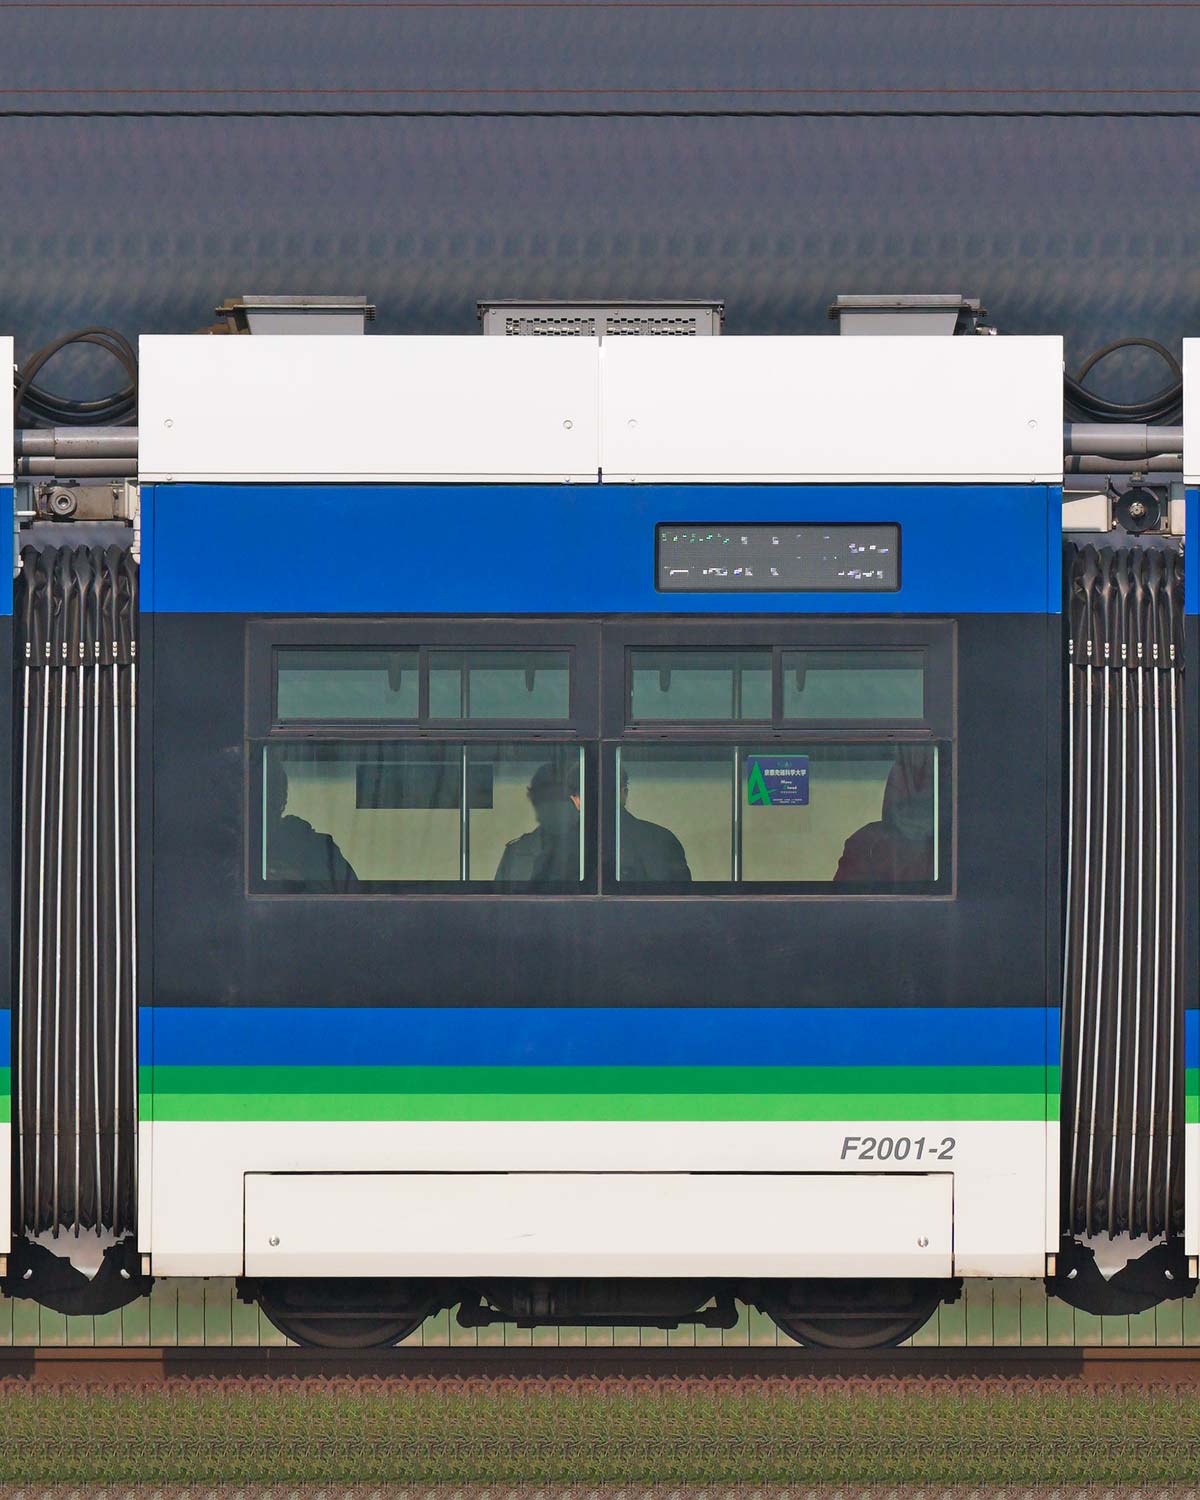 福井鉄道F2000形「FUKURAM Liner」F2001-2公式側の側面写真